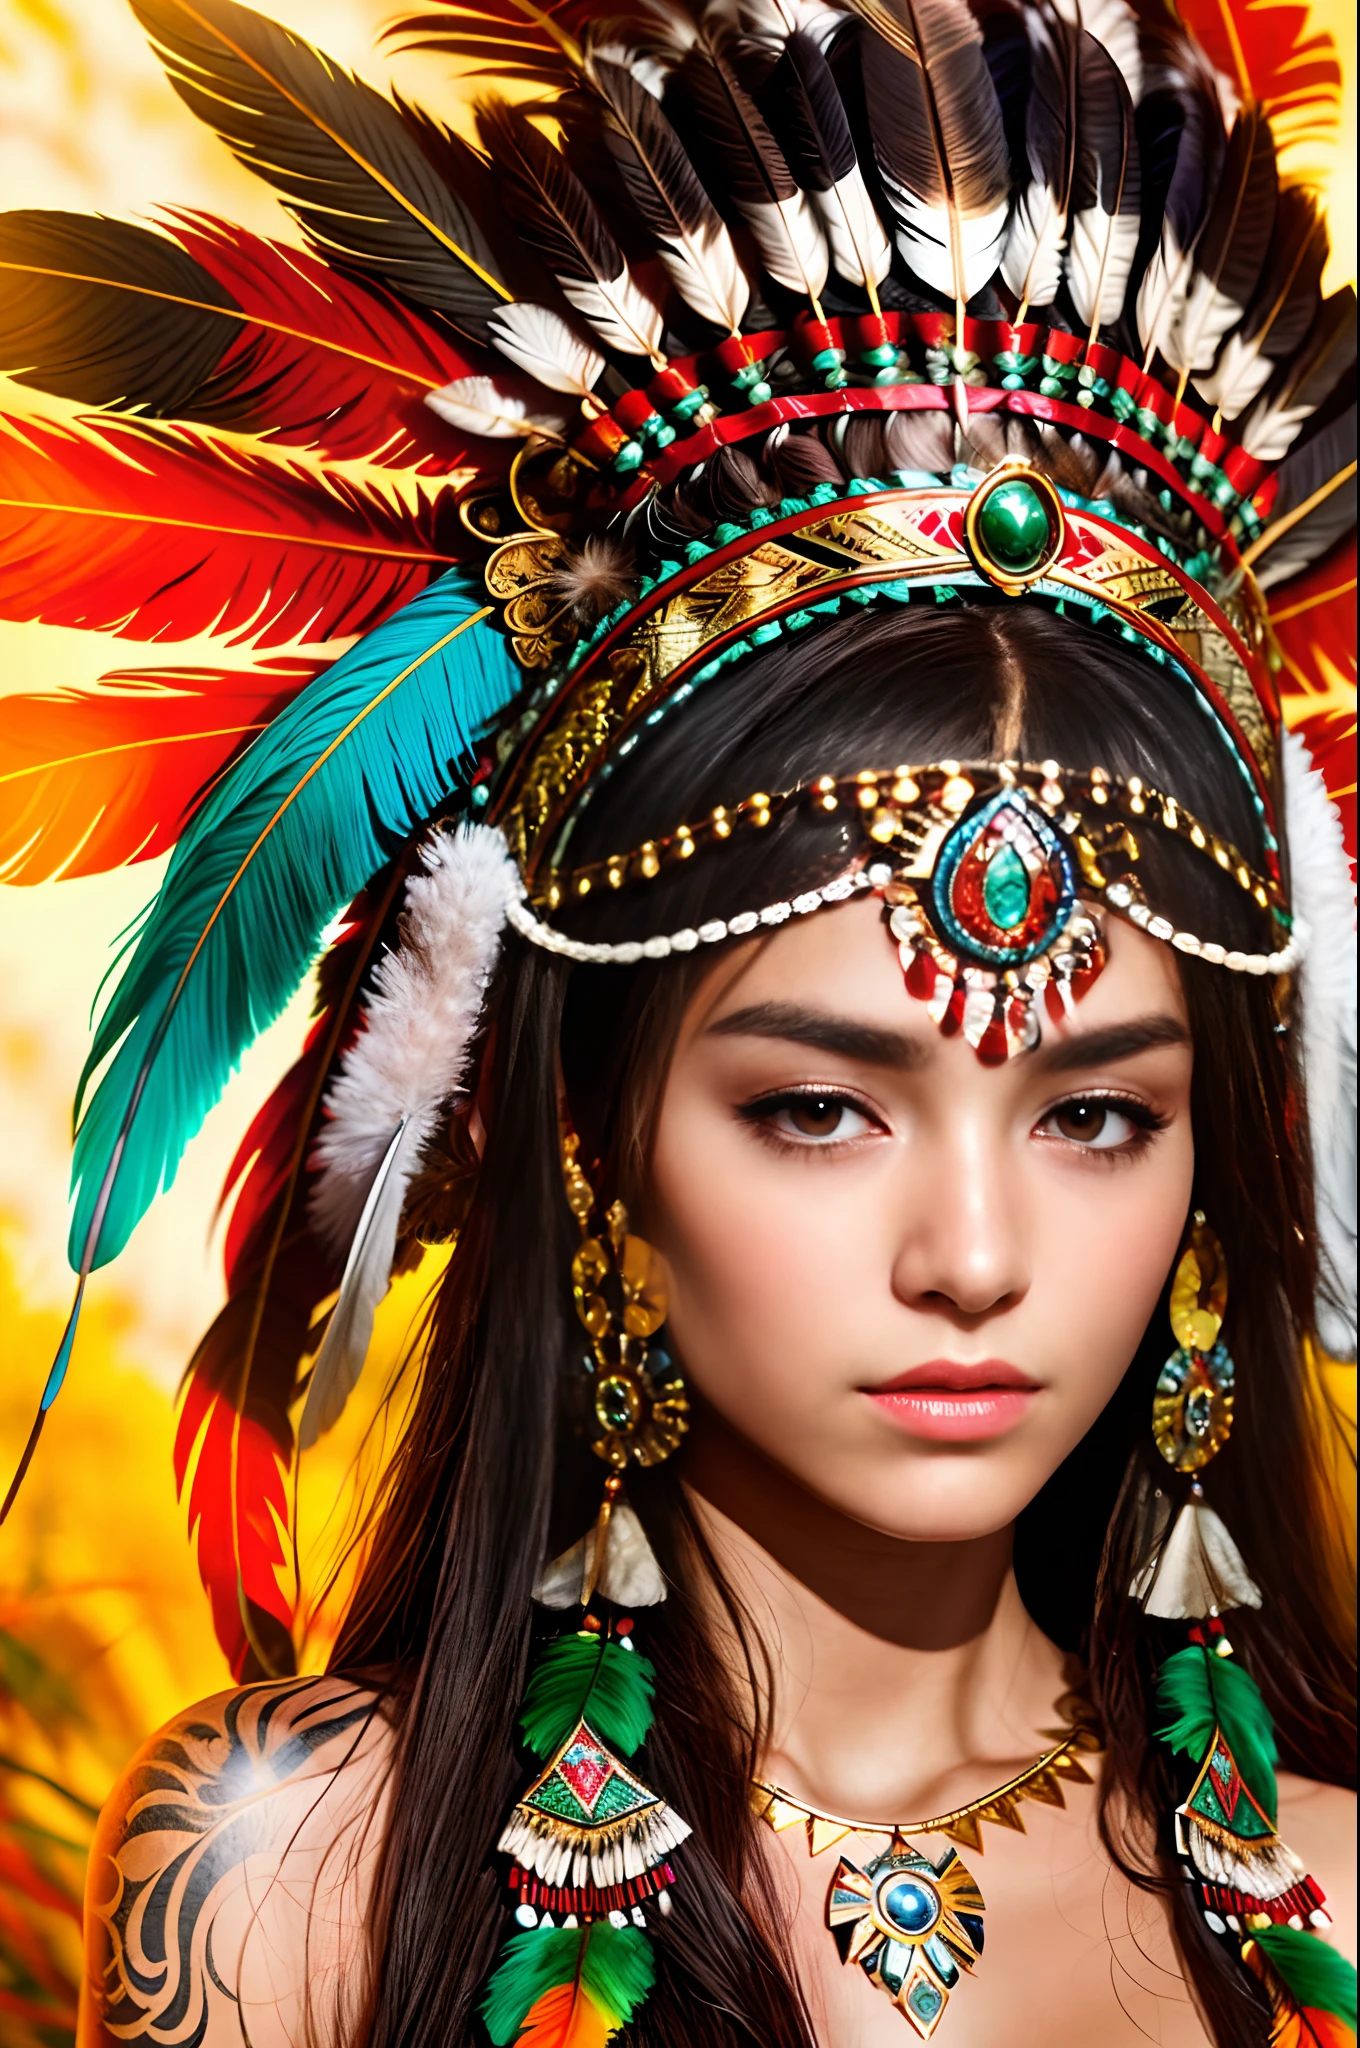 Wear a feather головной убор，Арадская женщина с перьями на голове, Портрет ацтекской принцессы, носить корону из ярких перьев, девушка с перьями, красивая молодая шаманка, она одета в шаманскую одежду, feathered головной убор,Тату грудины, ornate головной убор, молодая шаманка, Кароль за UHD, головной убор, : Индейская фантастика Шамеона, centered головной убор